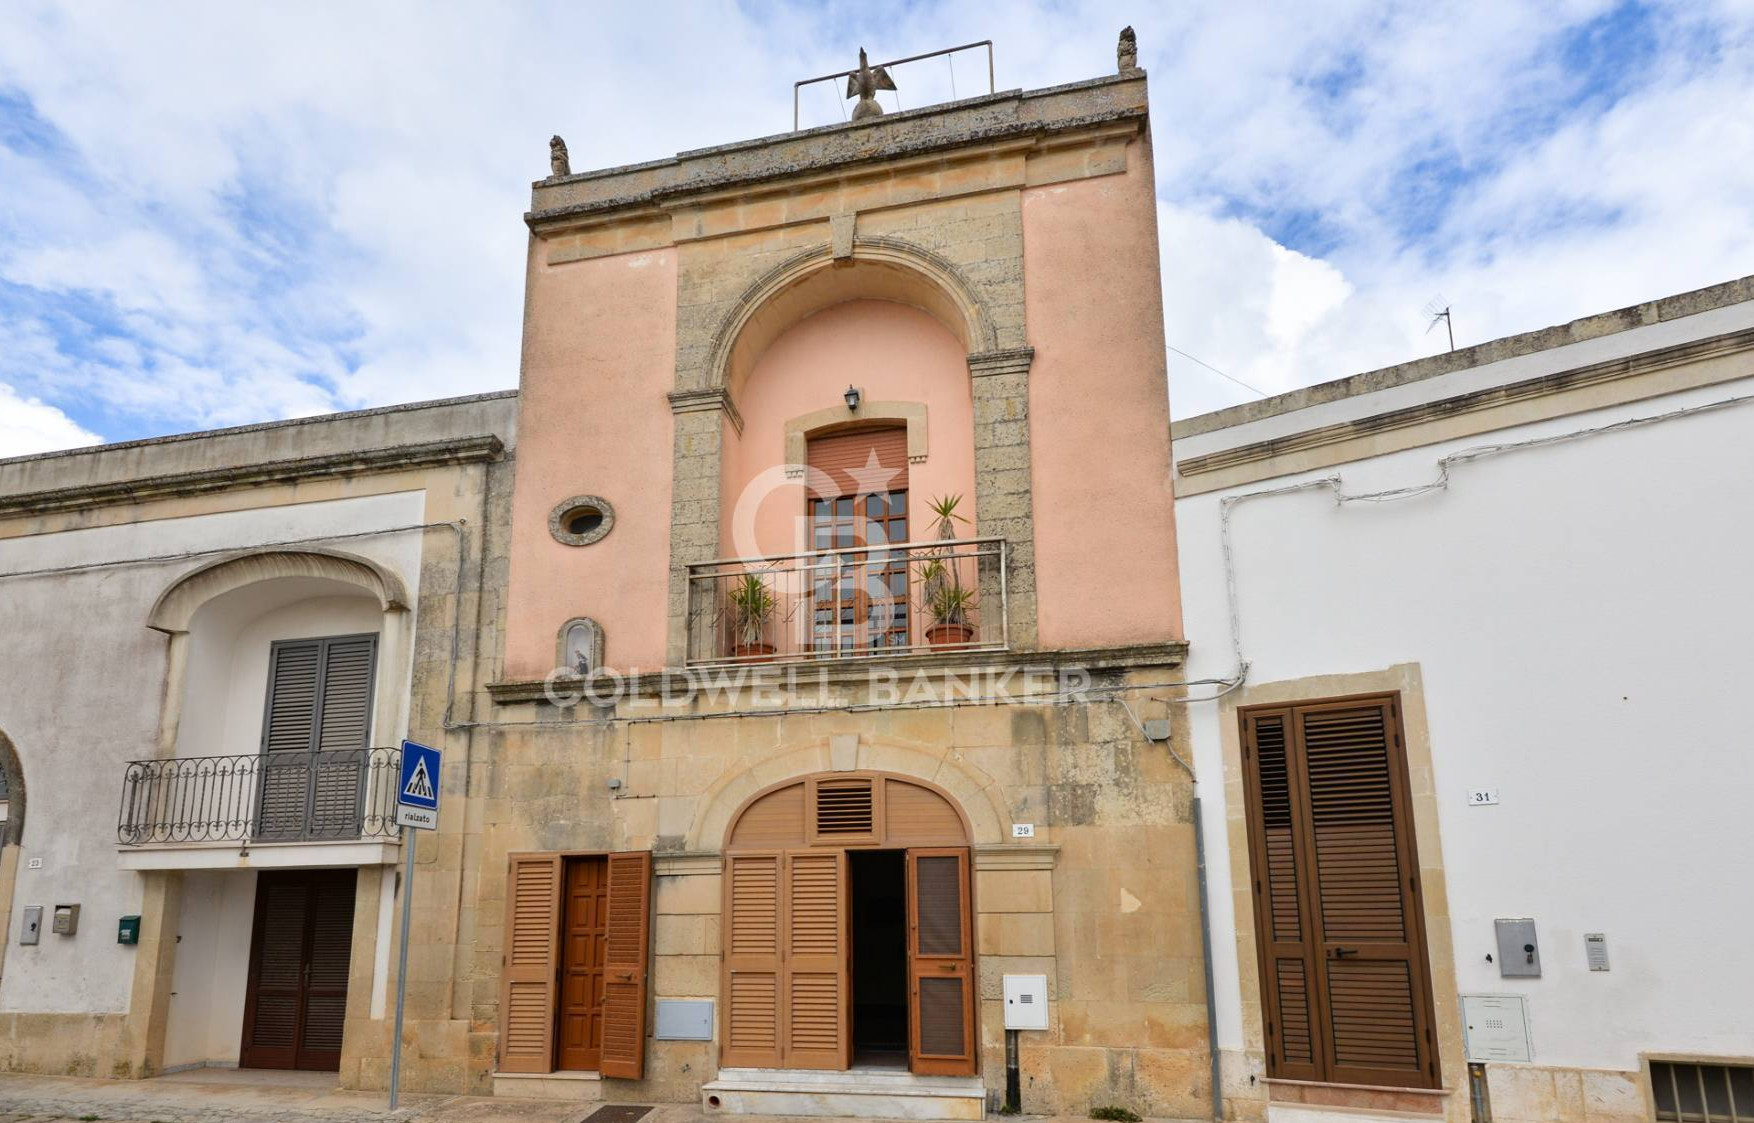 Casa indipendente in vendita Lecce